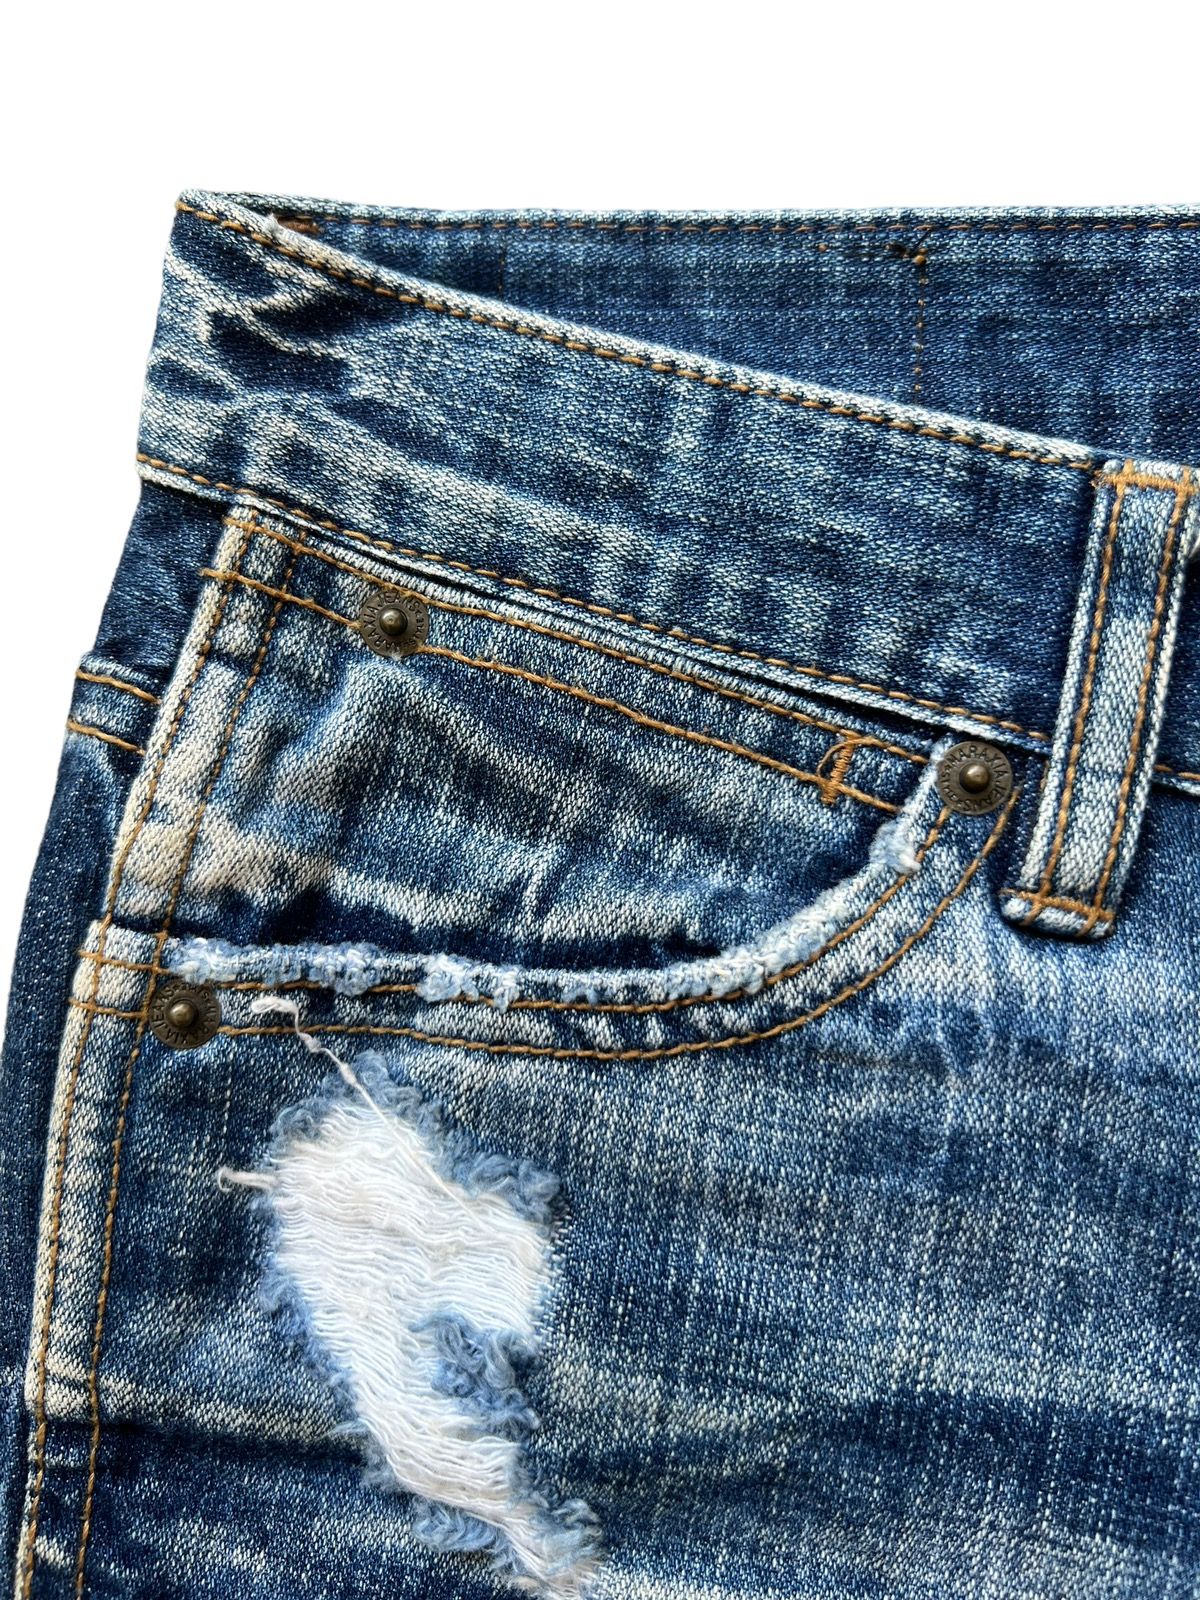 Distressed Denim - Juriano Jurrie Distressed Boot Cut Flare Denim Jeans 29x31 - 8